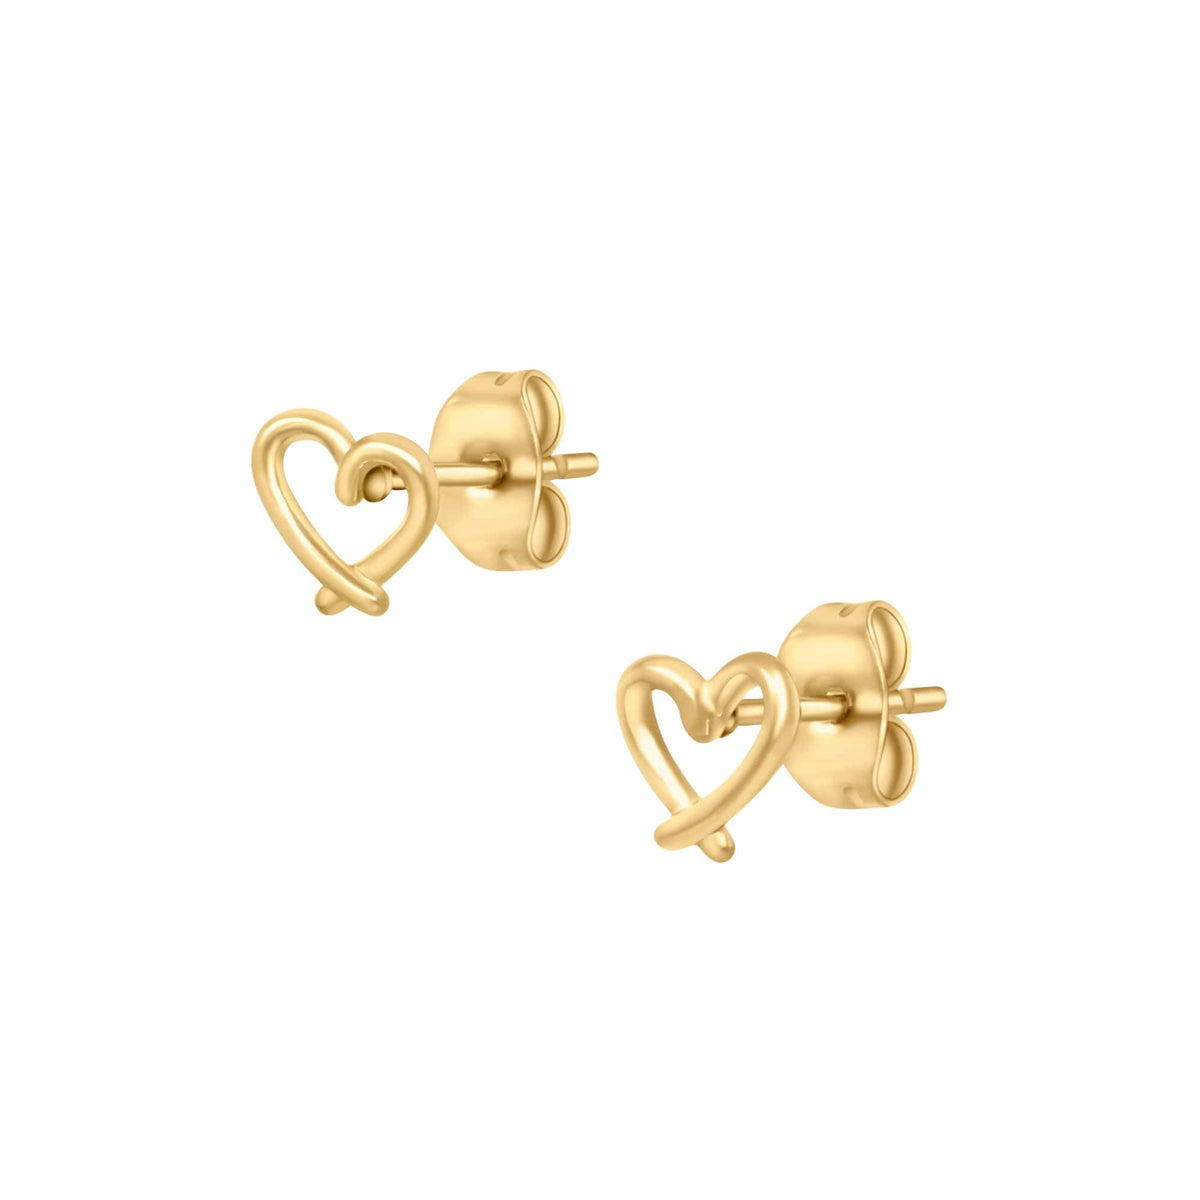 BohoMoon Stainless Steel Adorn Stud Earrings Gold